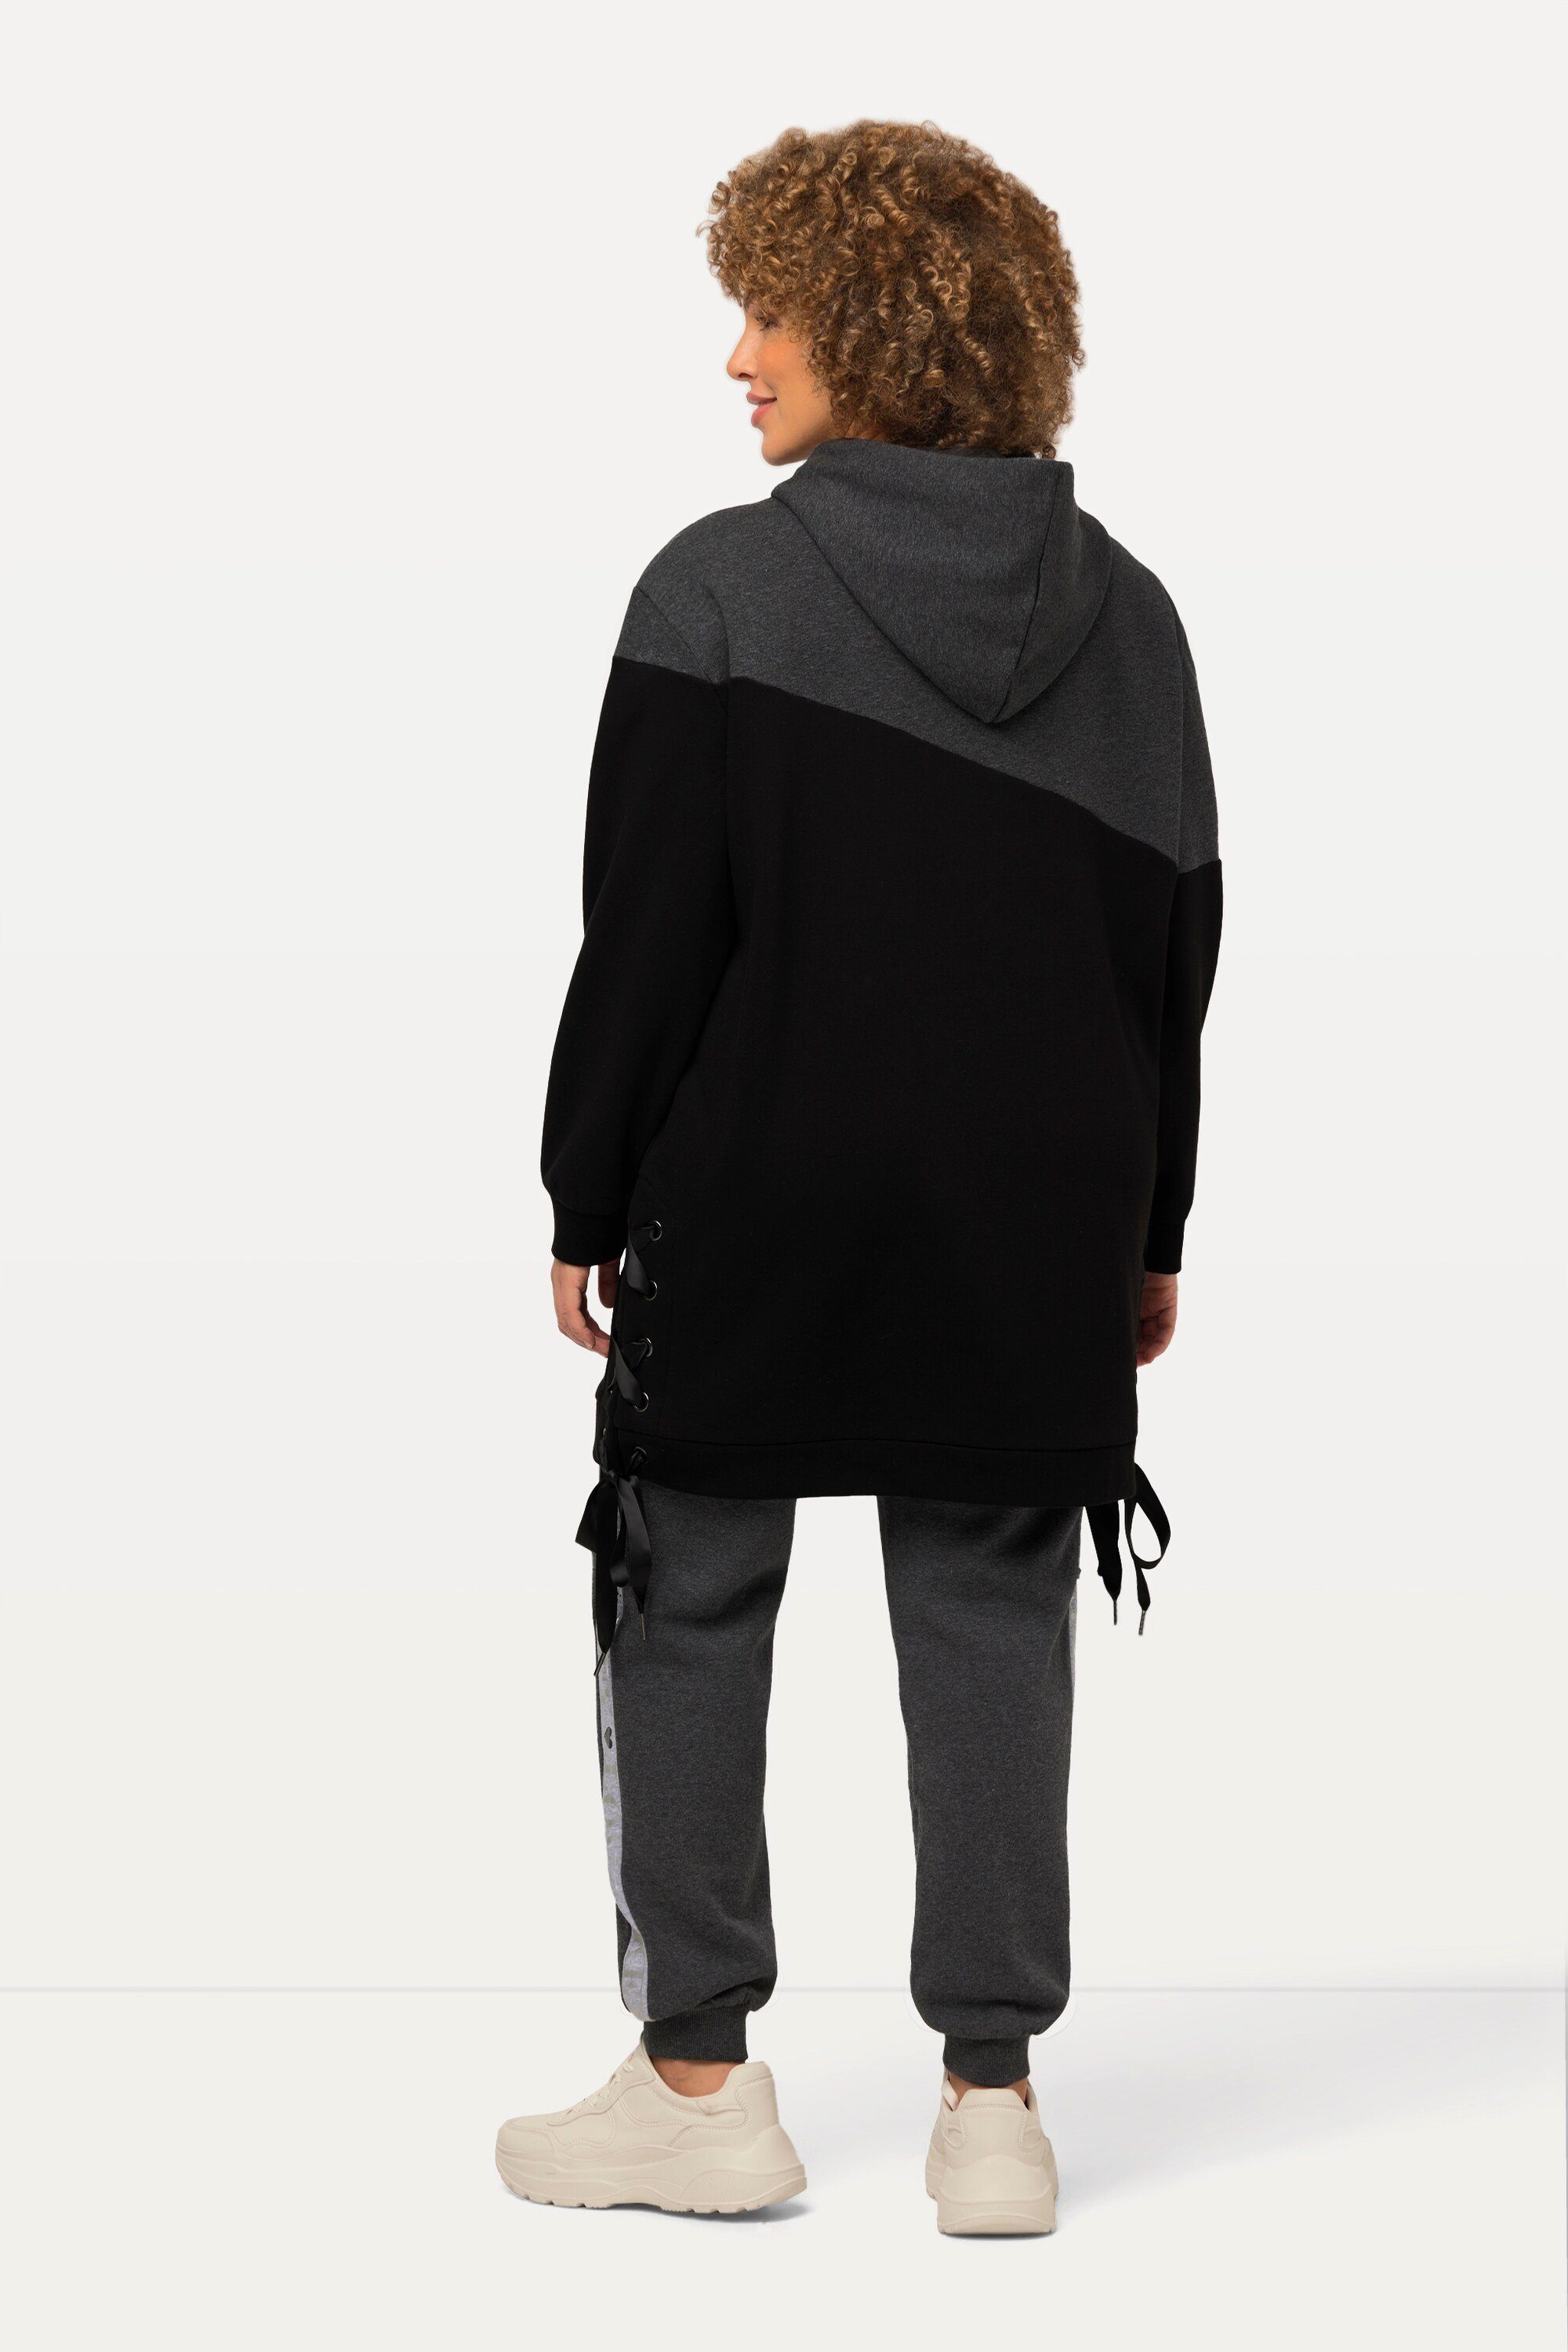 Ulla Langarm Longsweater Sweatshirt Schnürung Kapuze Popken Colorblocking